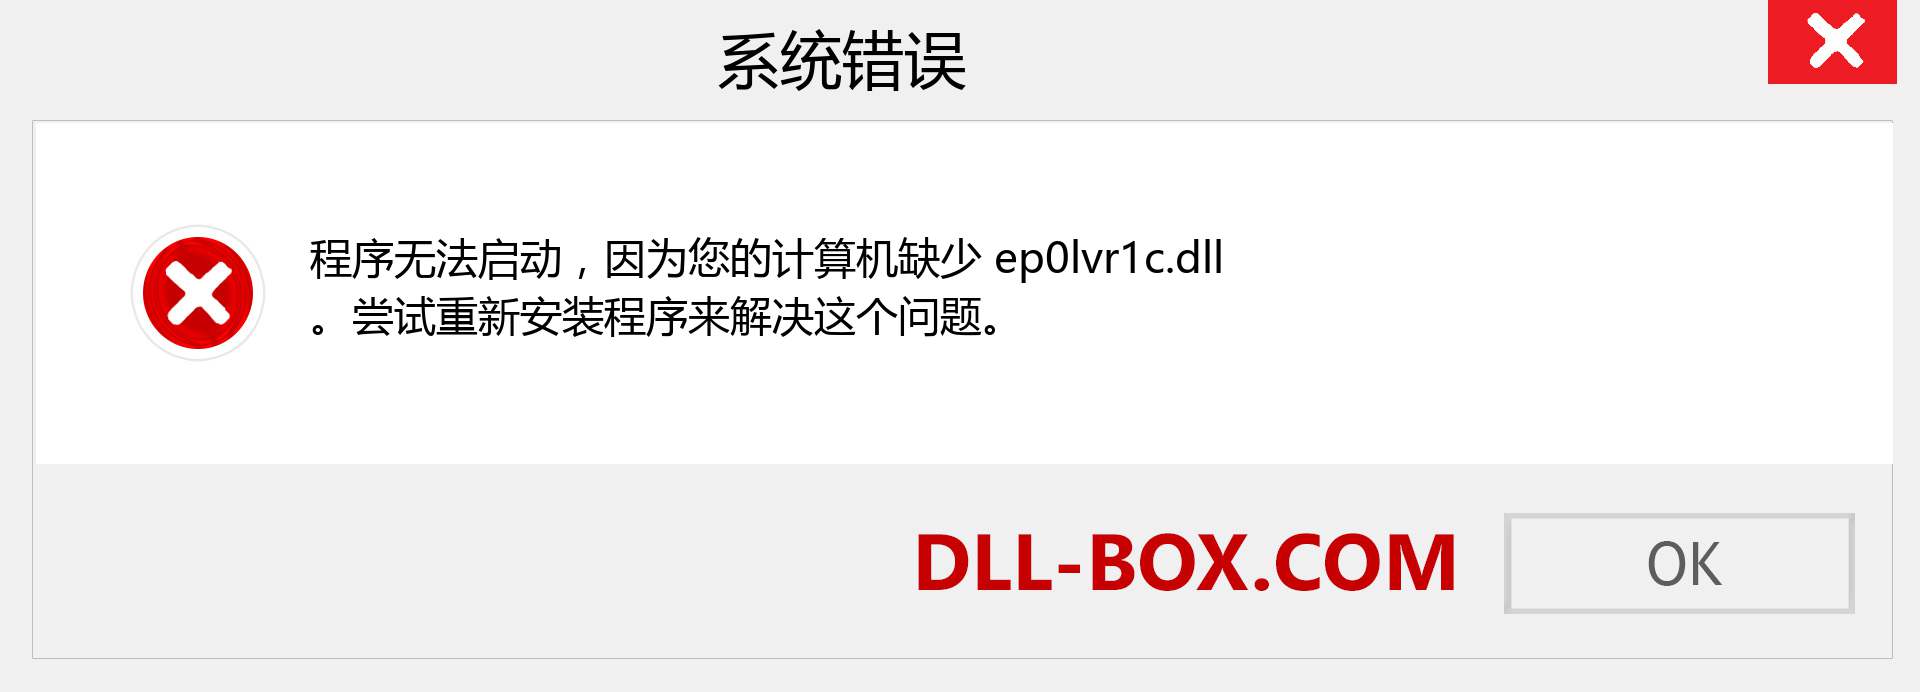 ep0lvr1c.dll 文件丢失？。 适用于 Windows 7、8、10 的下载 - 修复 Windows、照片、图像上的 ep0lvr1c dll 丢失错误